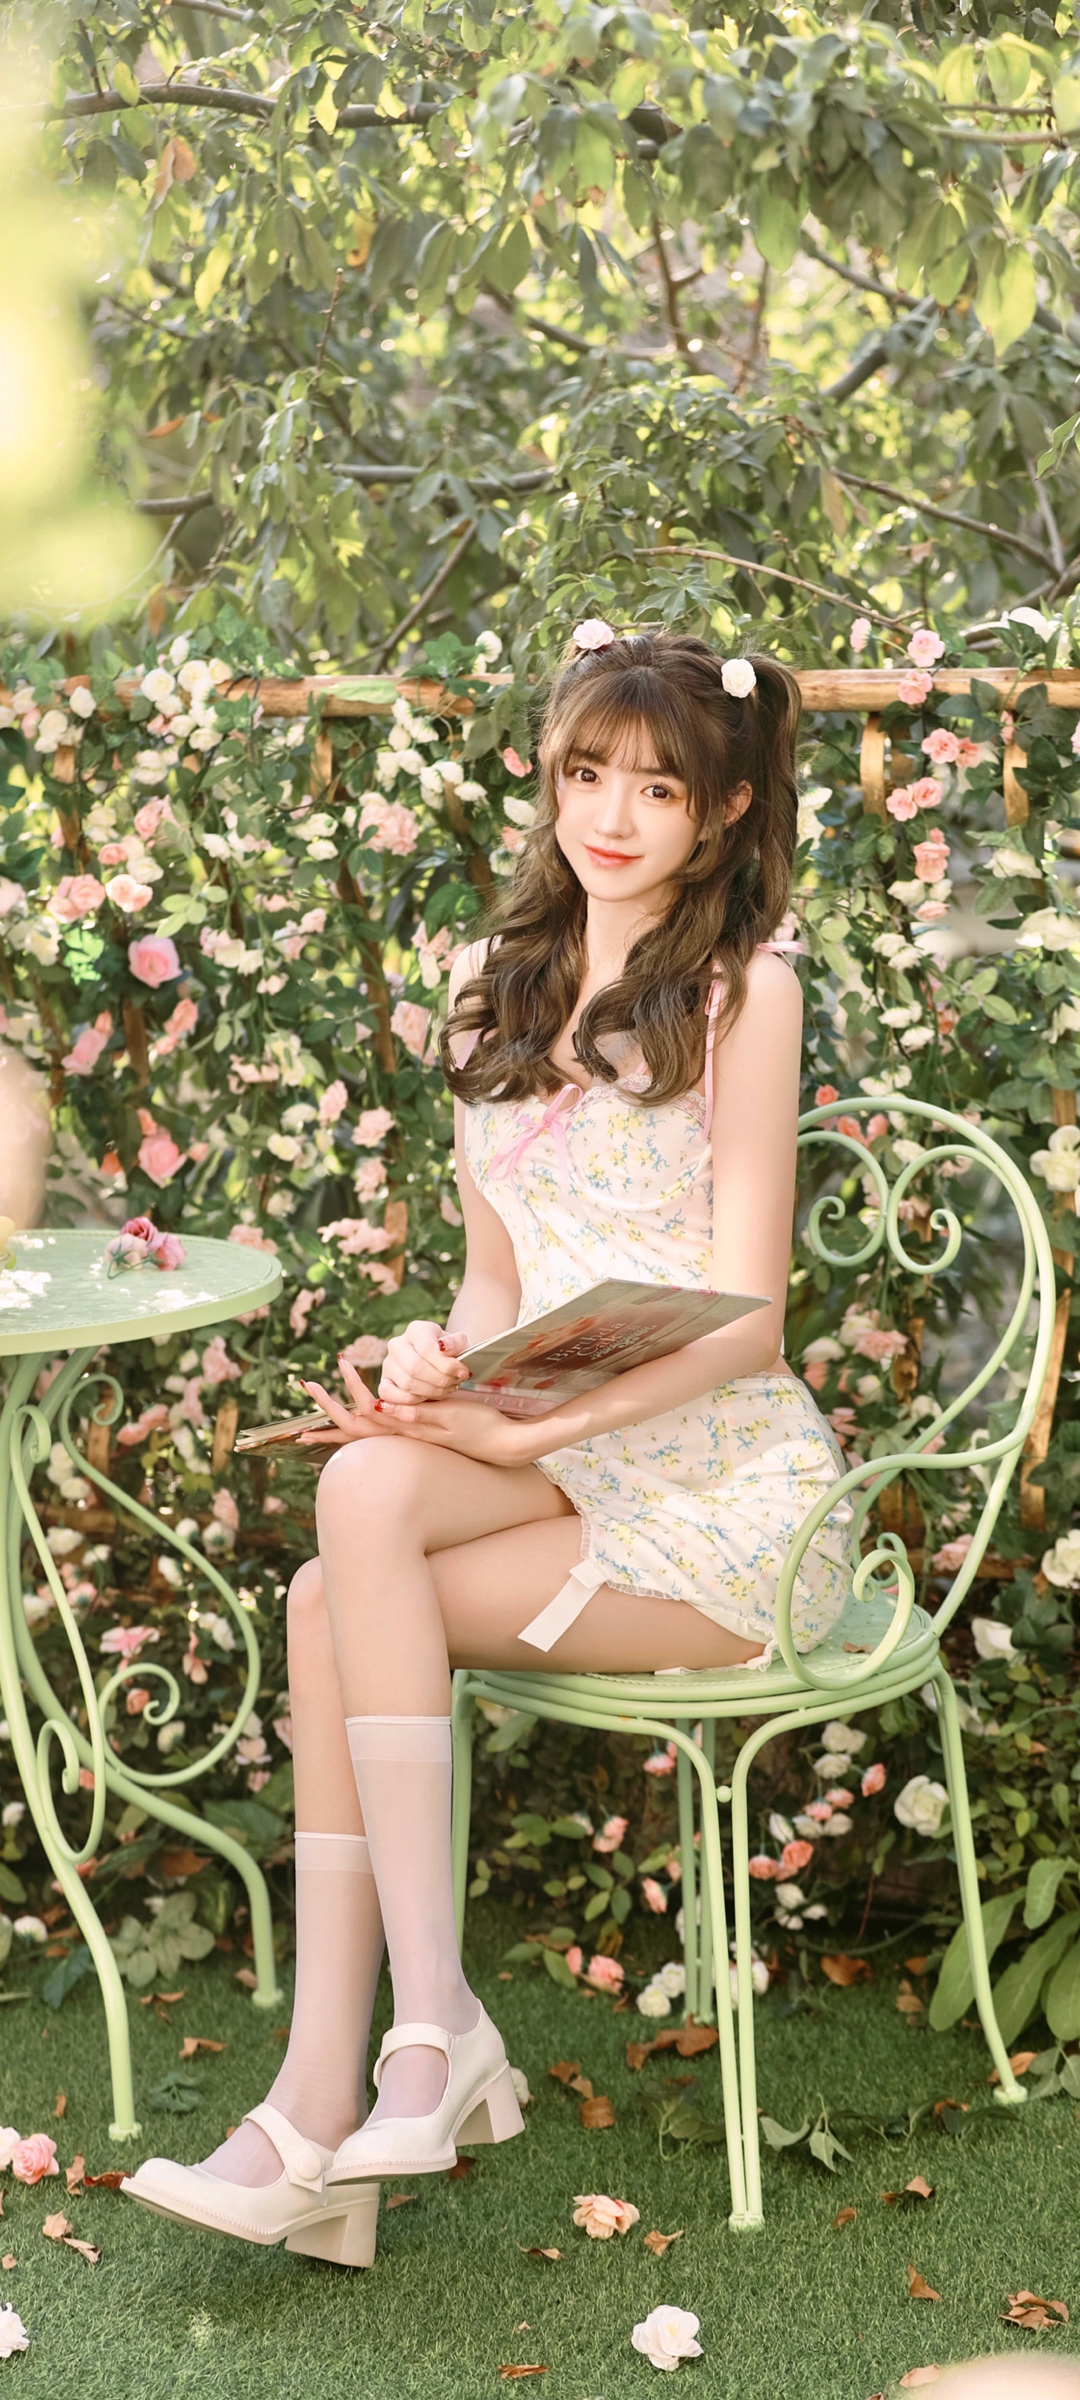 坐在花园的可爱清纯美女美腿手机壁纸